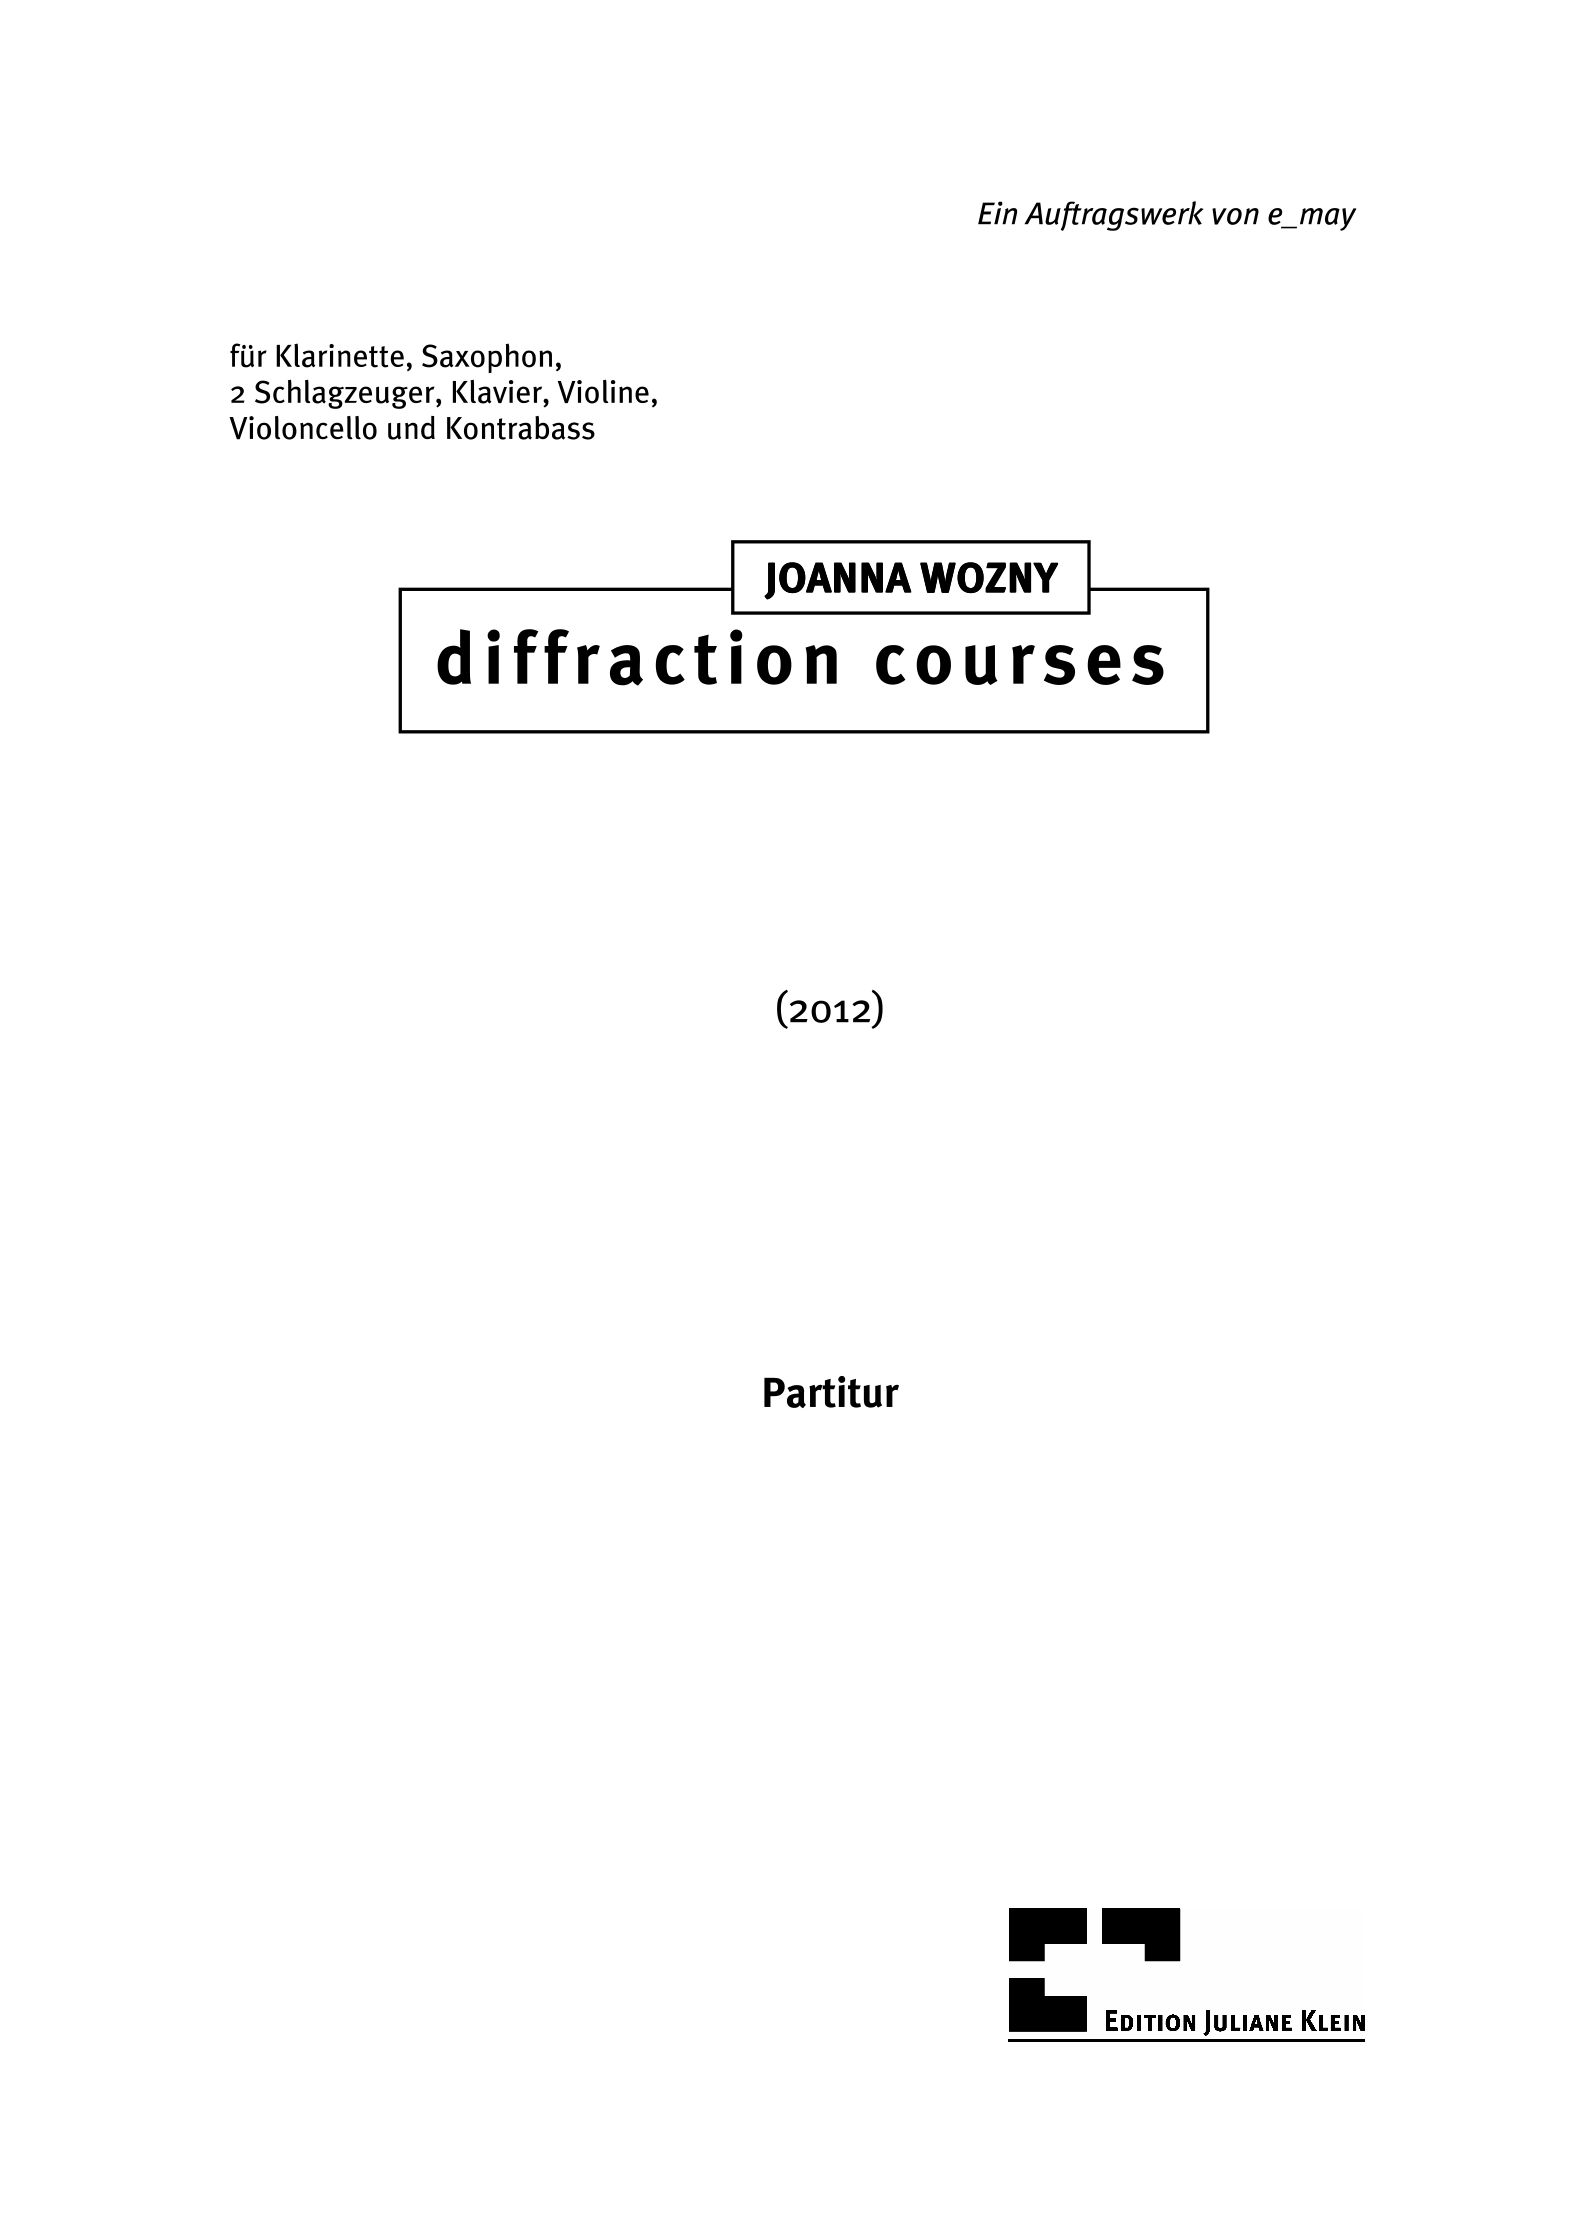 wozny_diffraction courses_partitur z